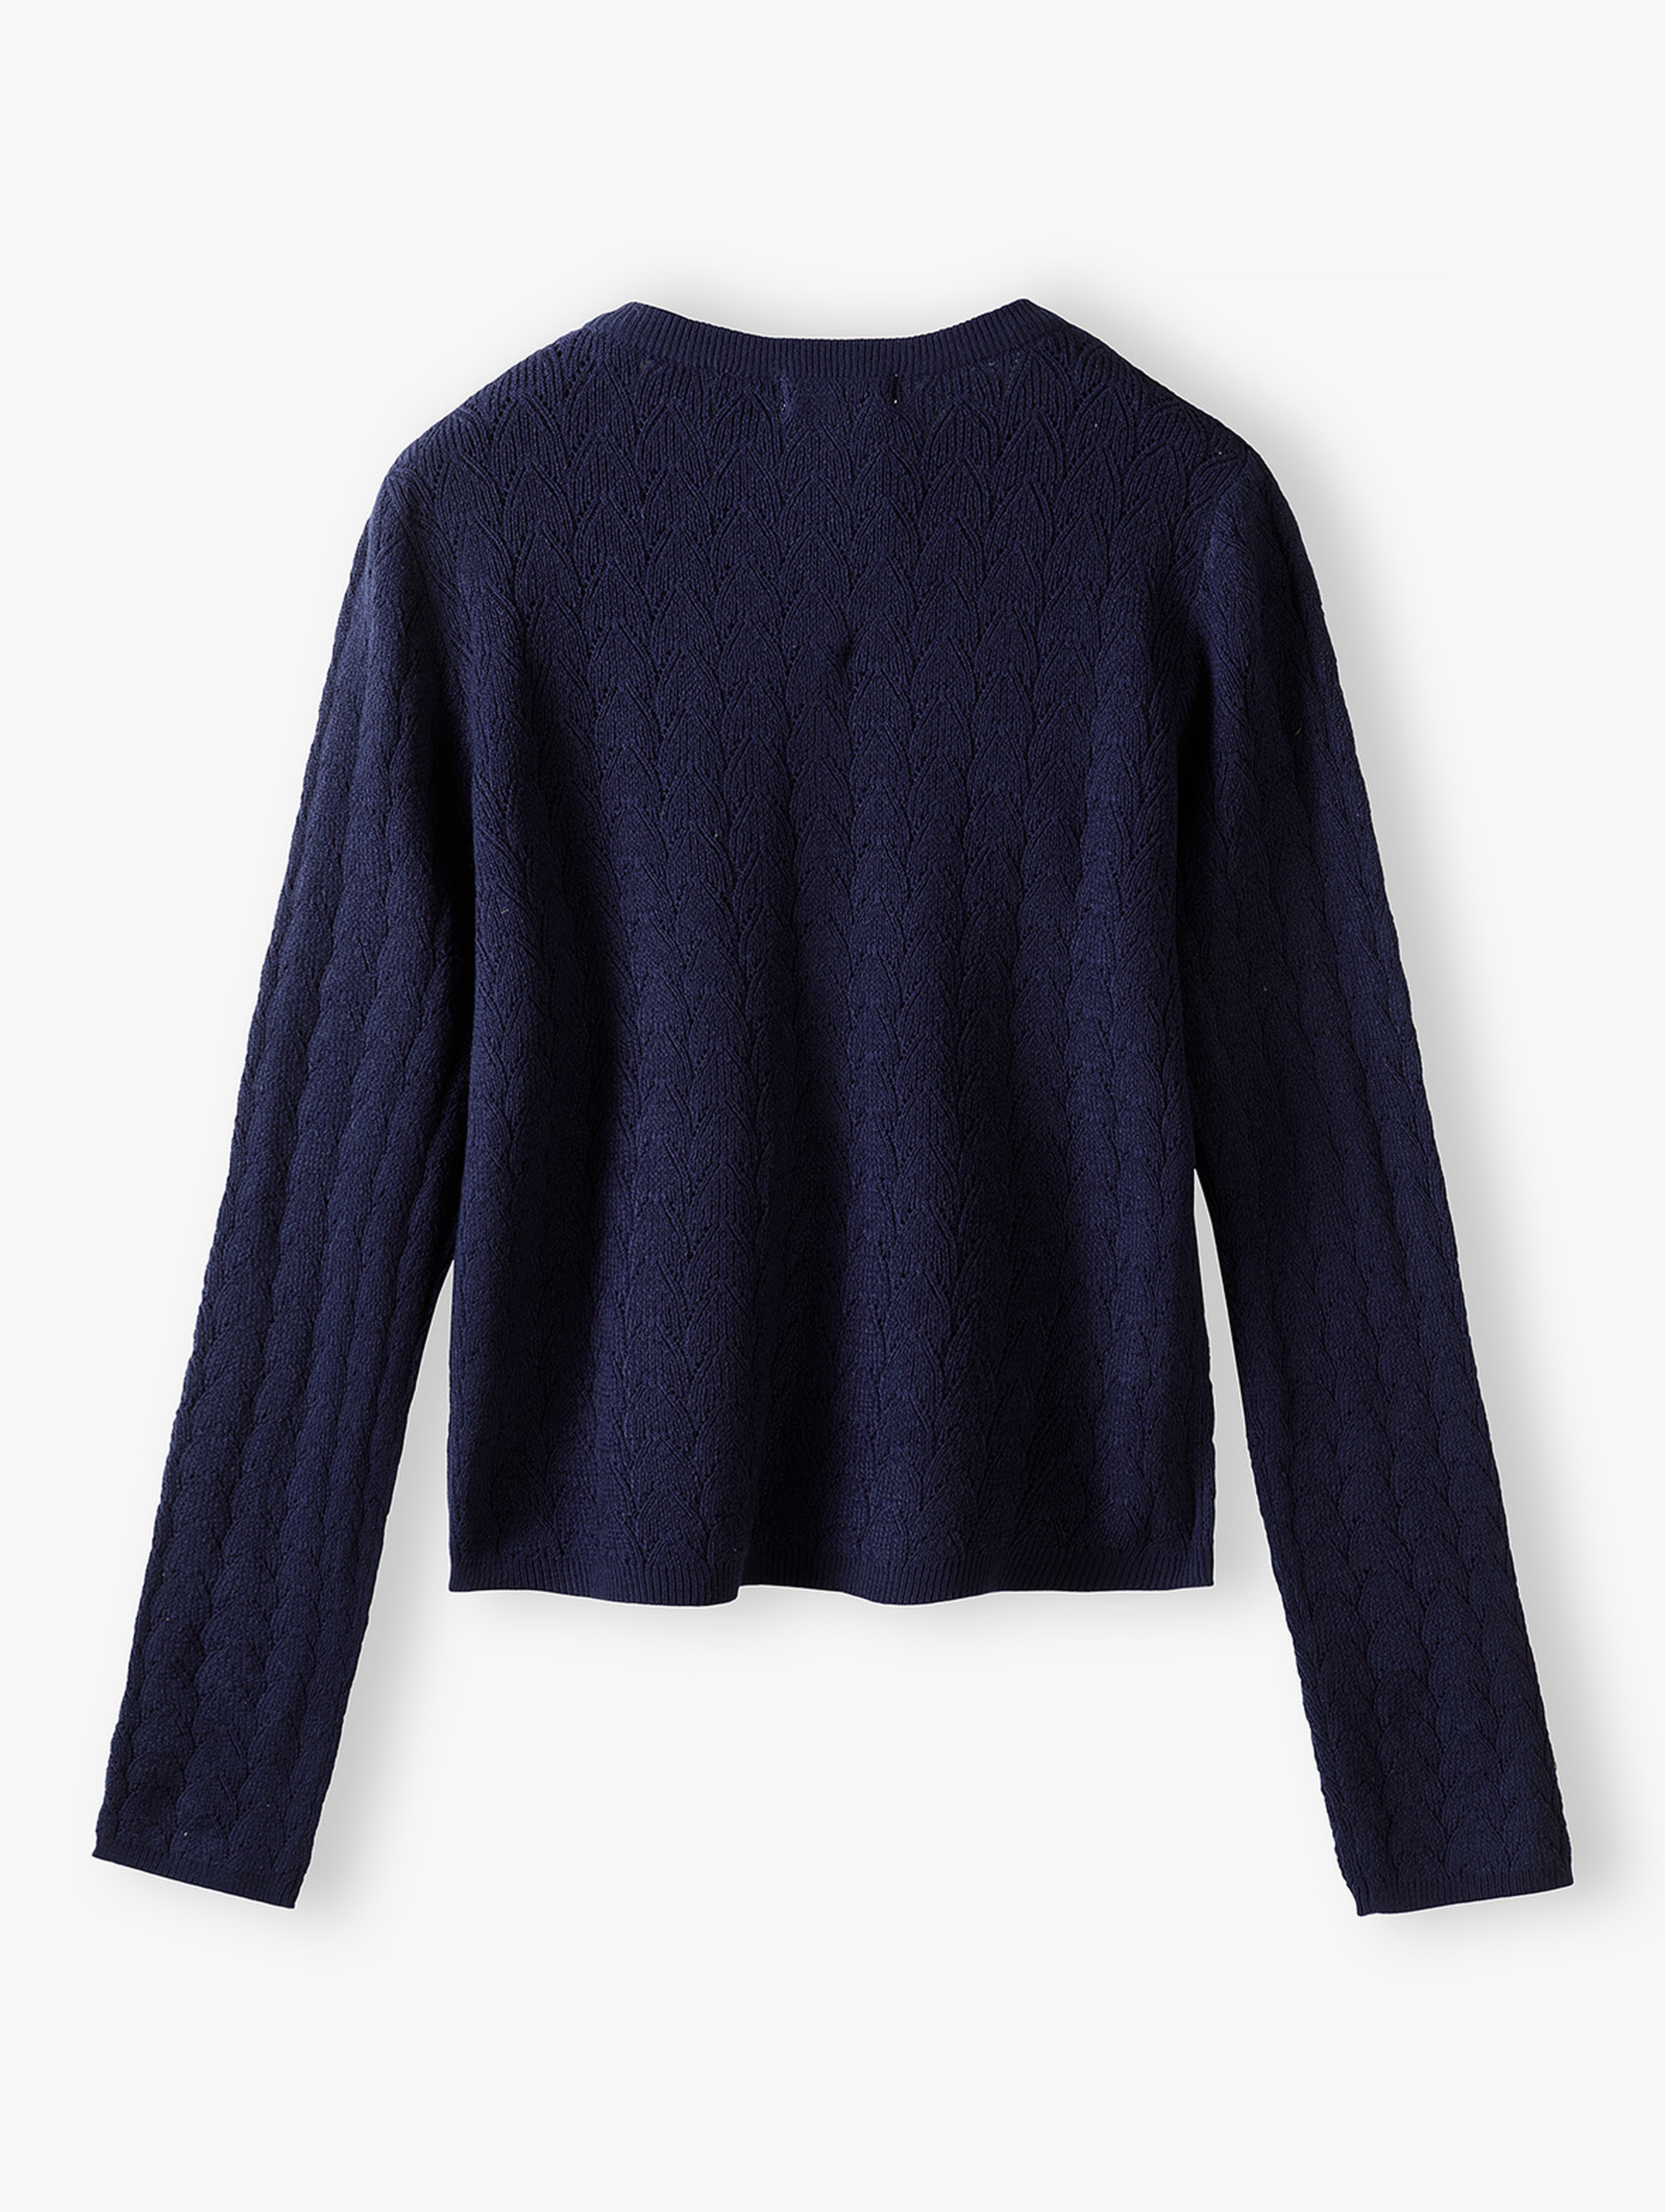 Granatowy sweter dla dziewczynki z ozdobnymi guzikami